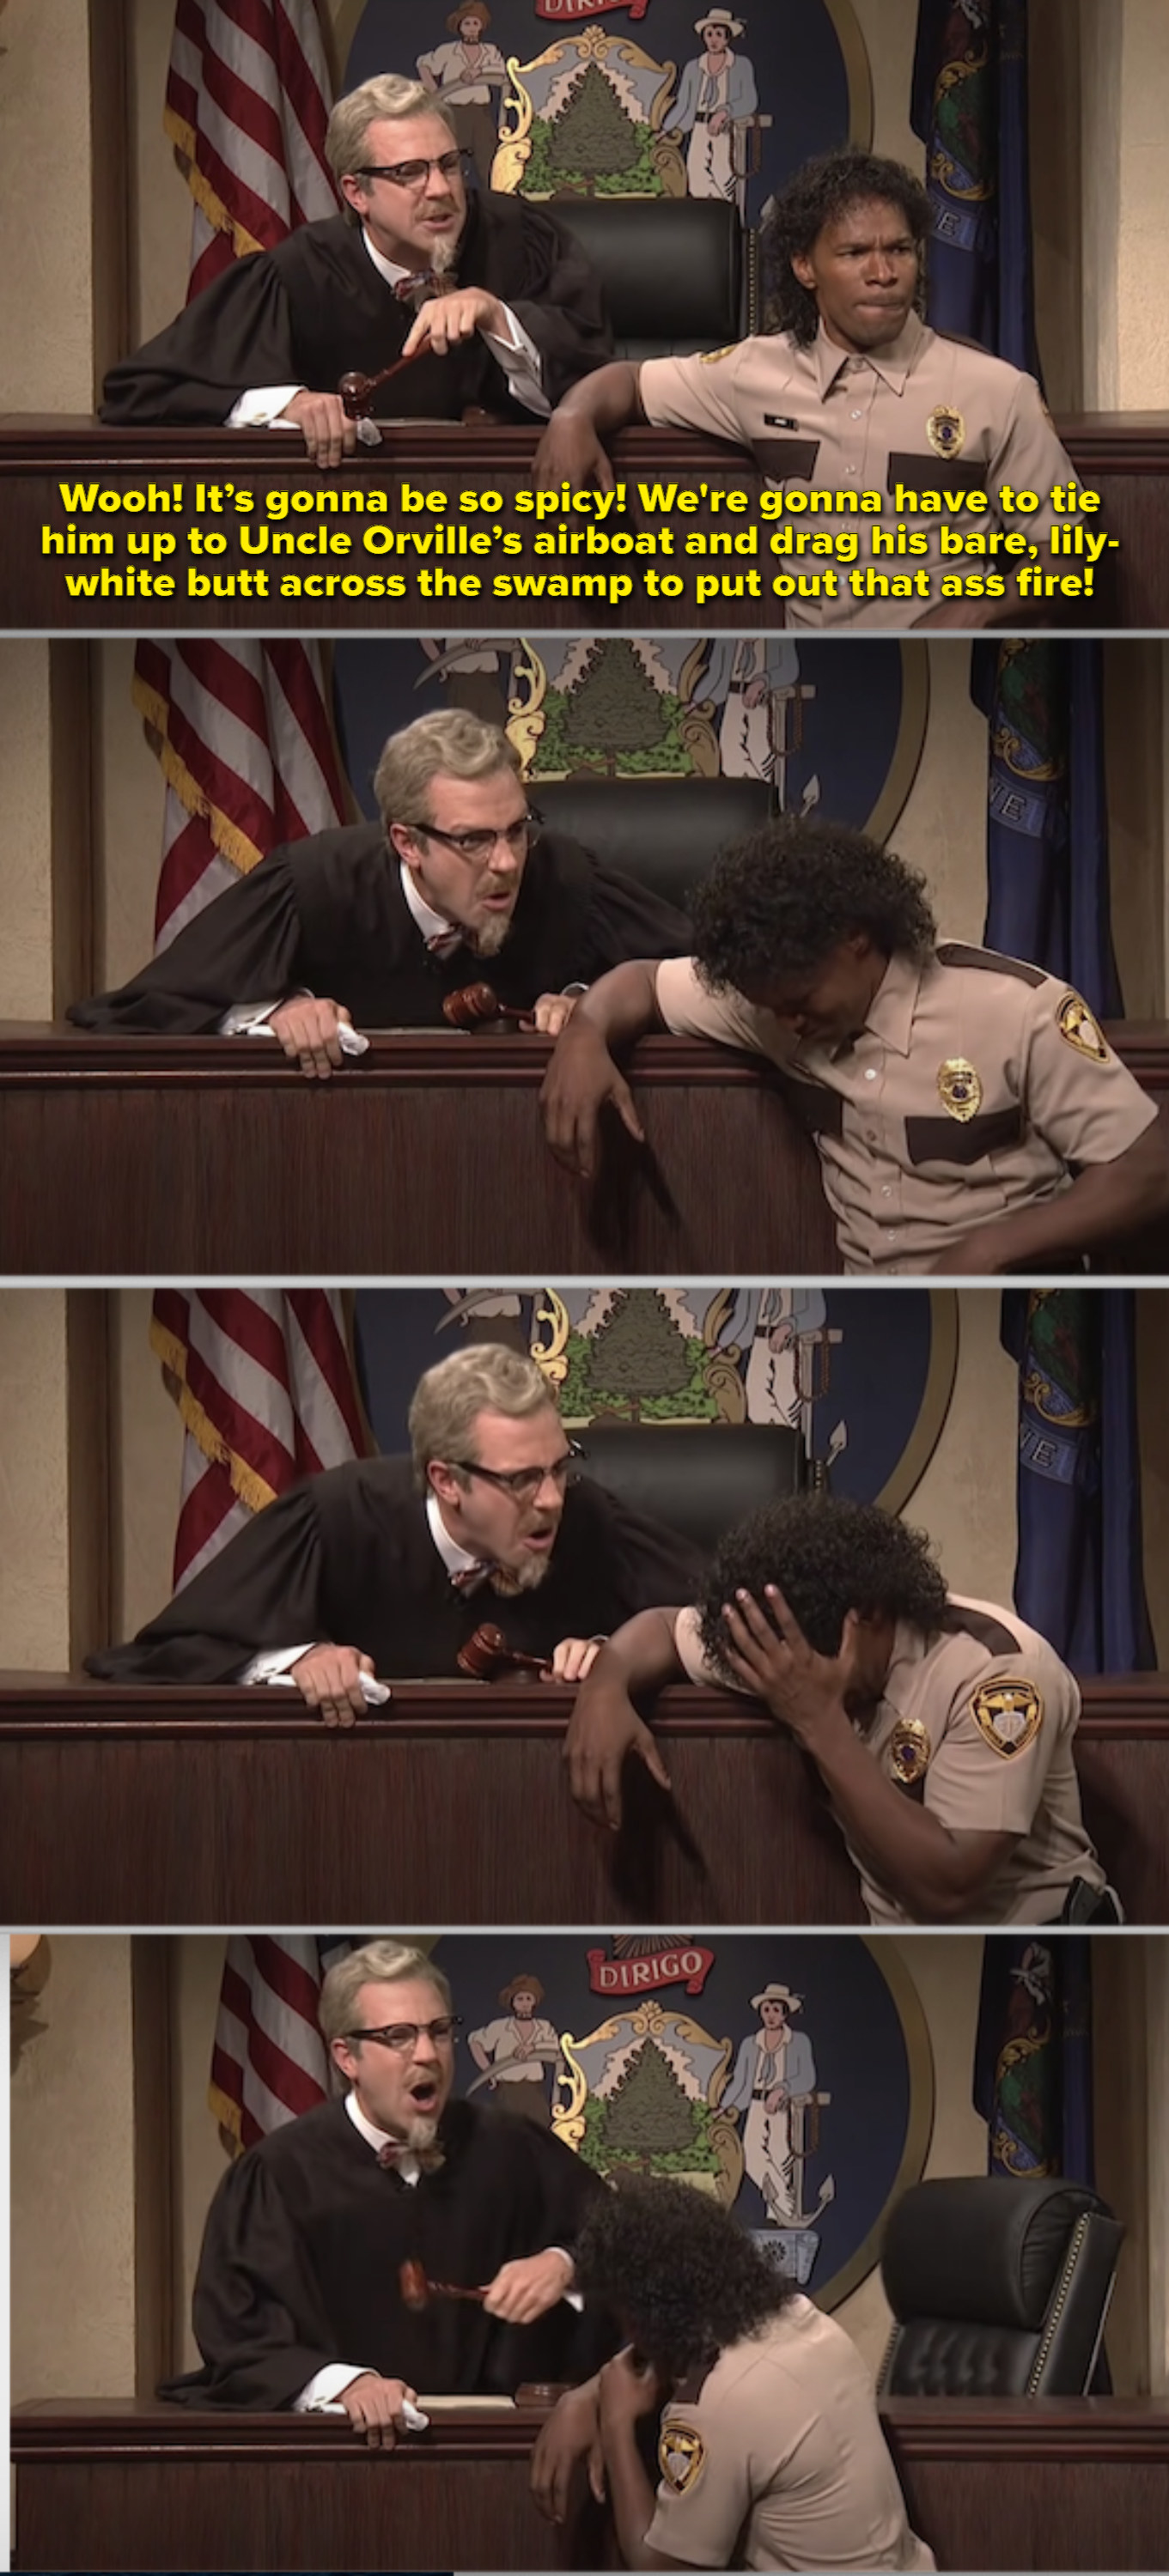 Jaimee Foxx as a plaintiff, laughing in court